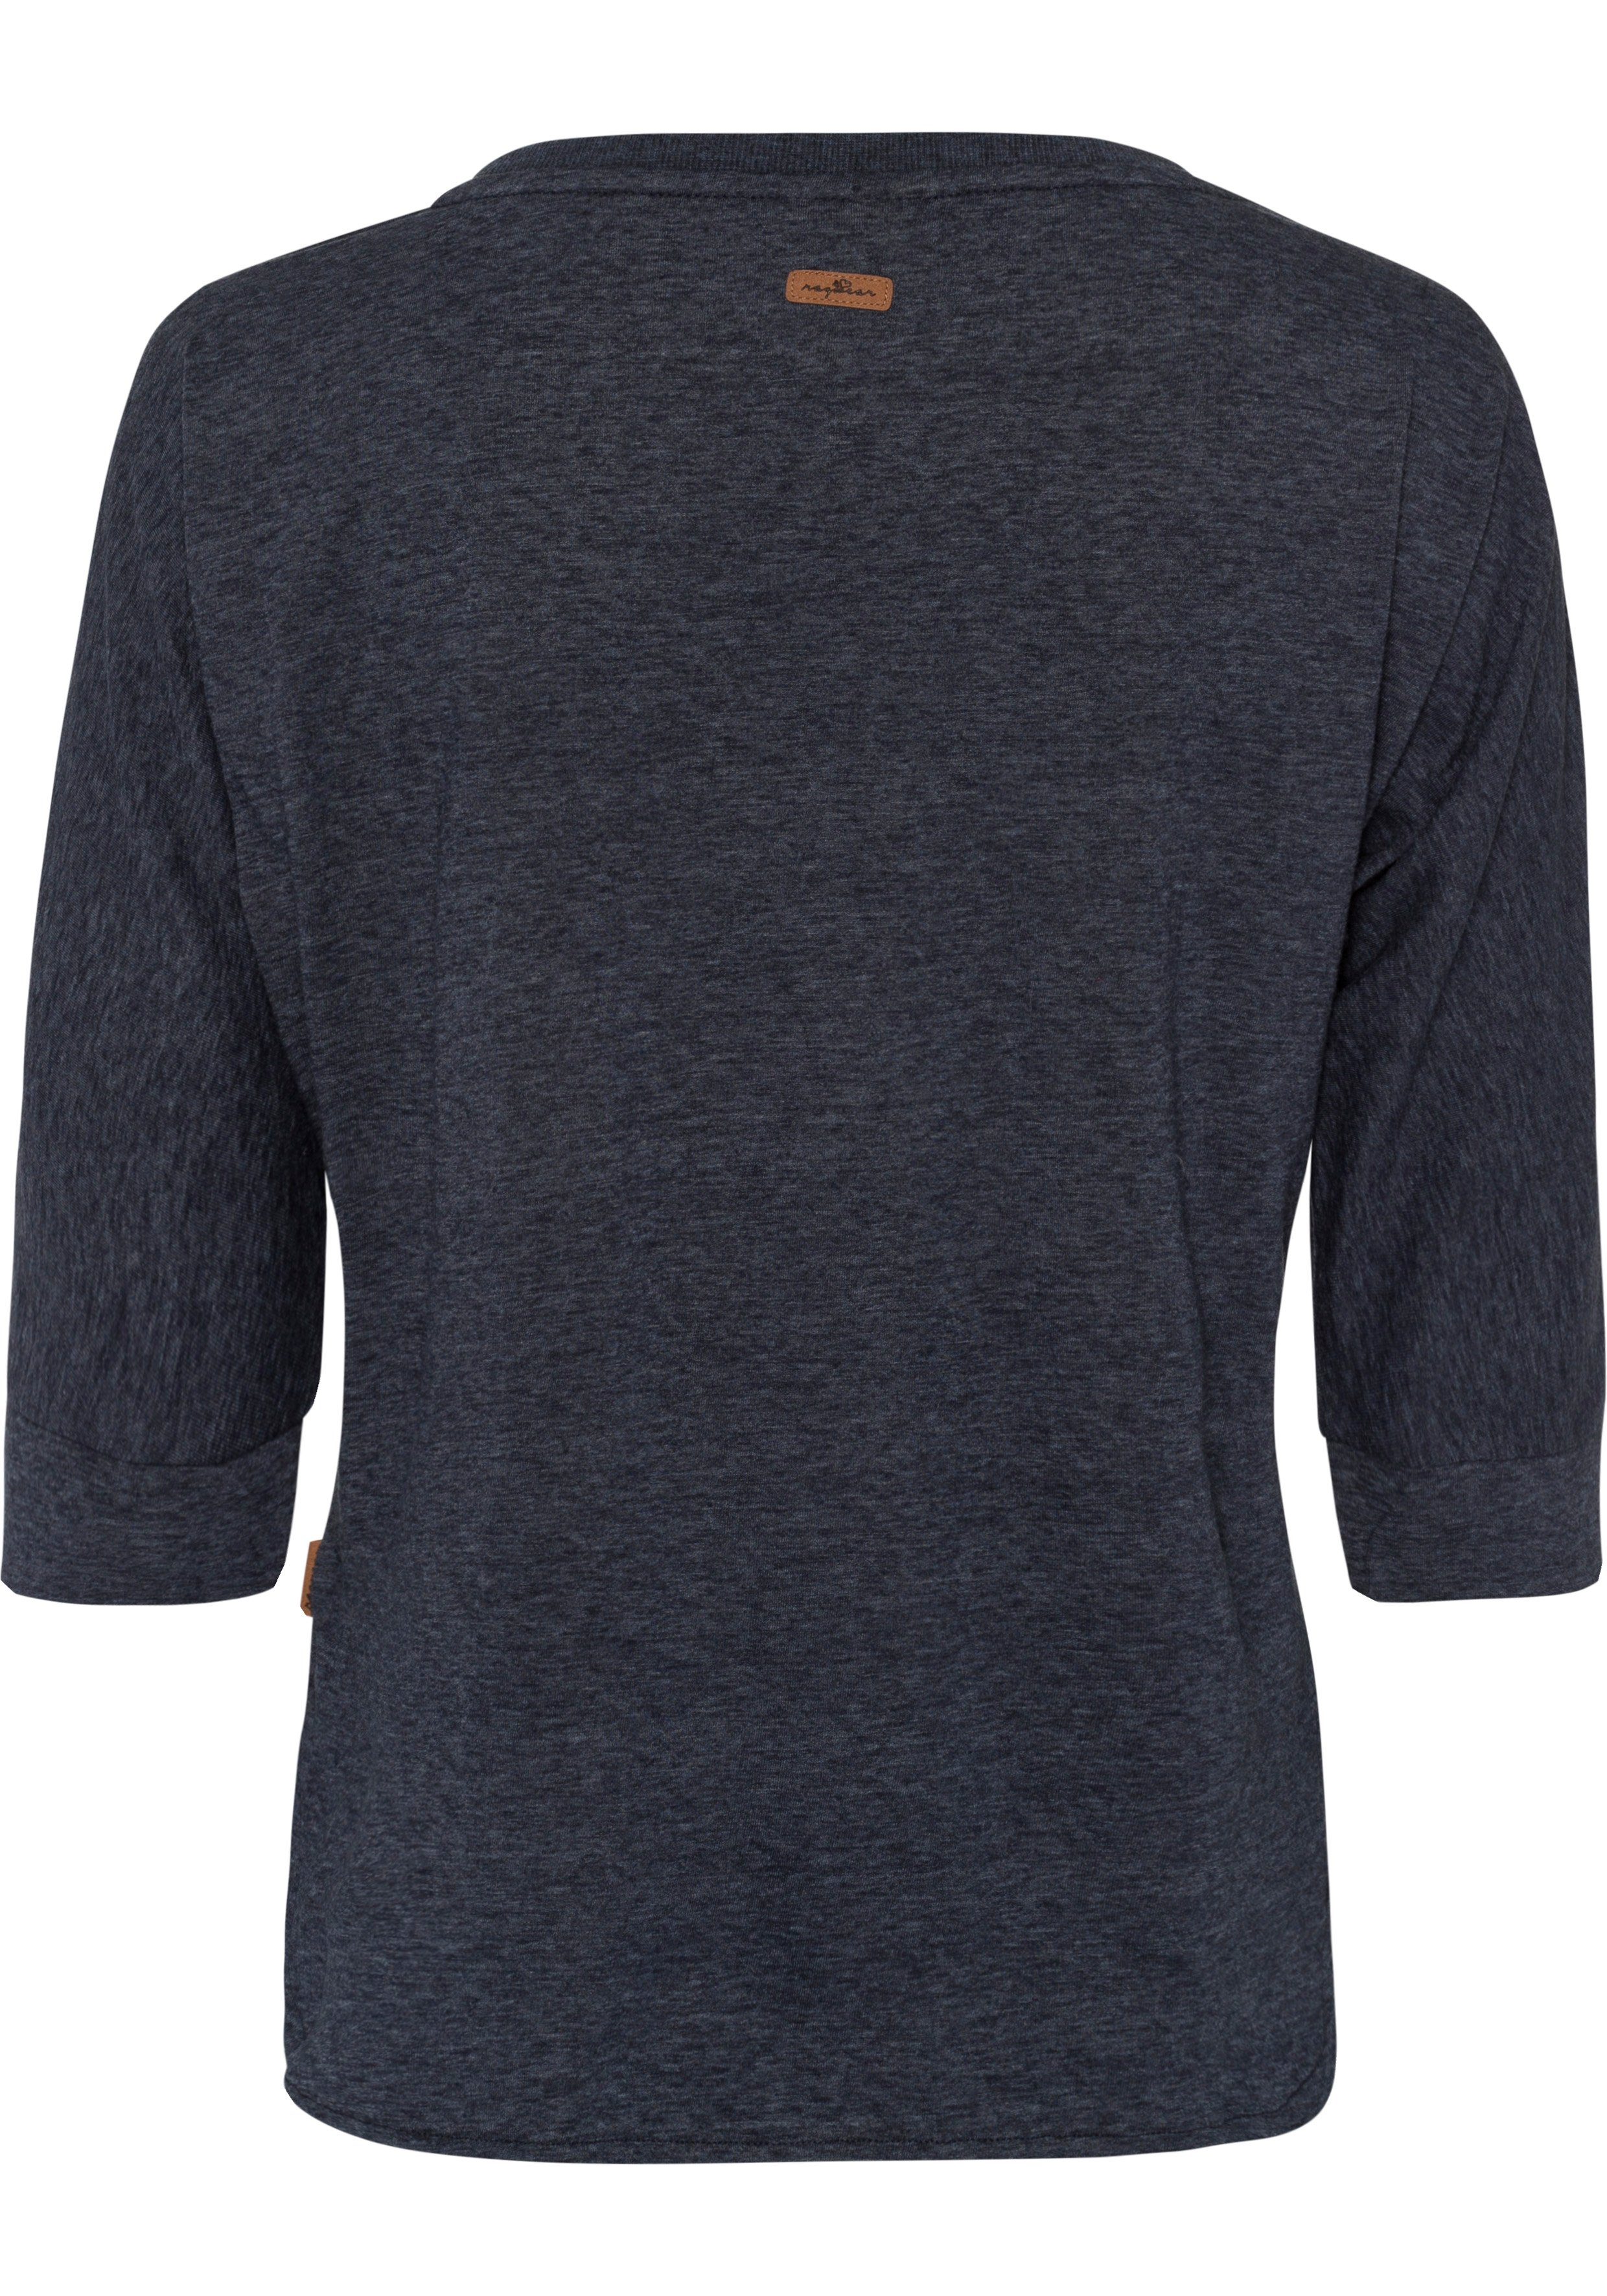 Ragwear T-Shirt SHIMONA mit Zierknopfbesatz natürlicher navy Herz-Design im in Holzoptik